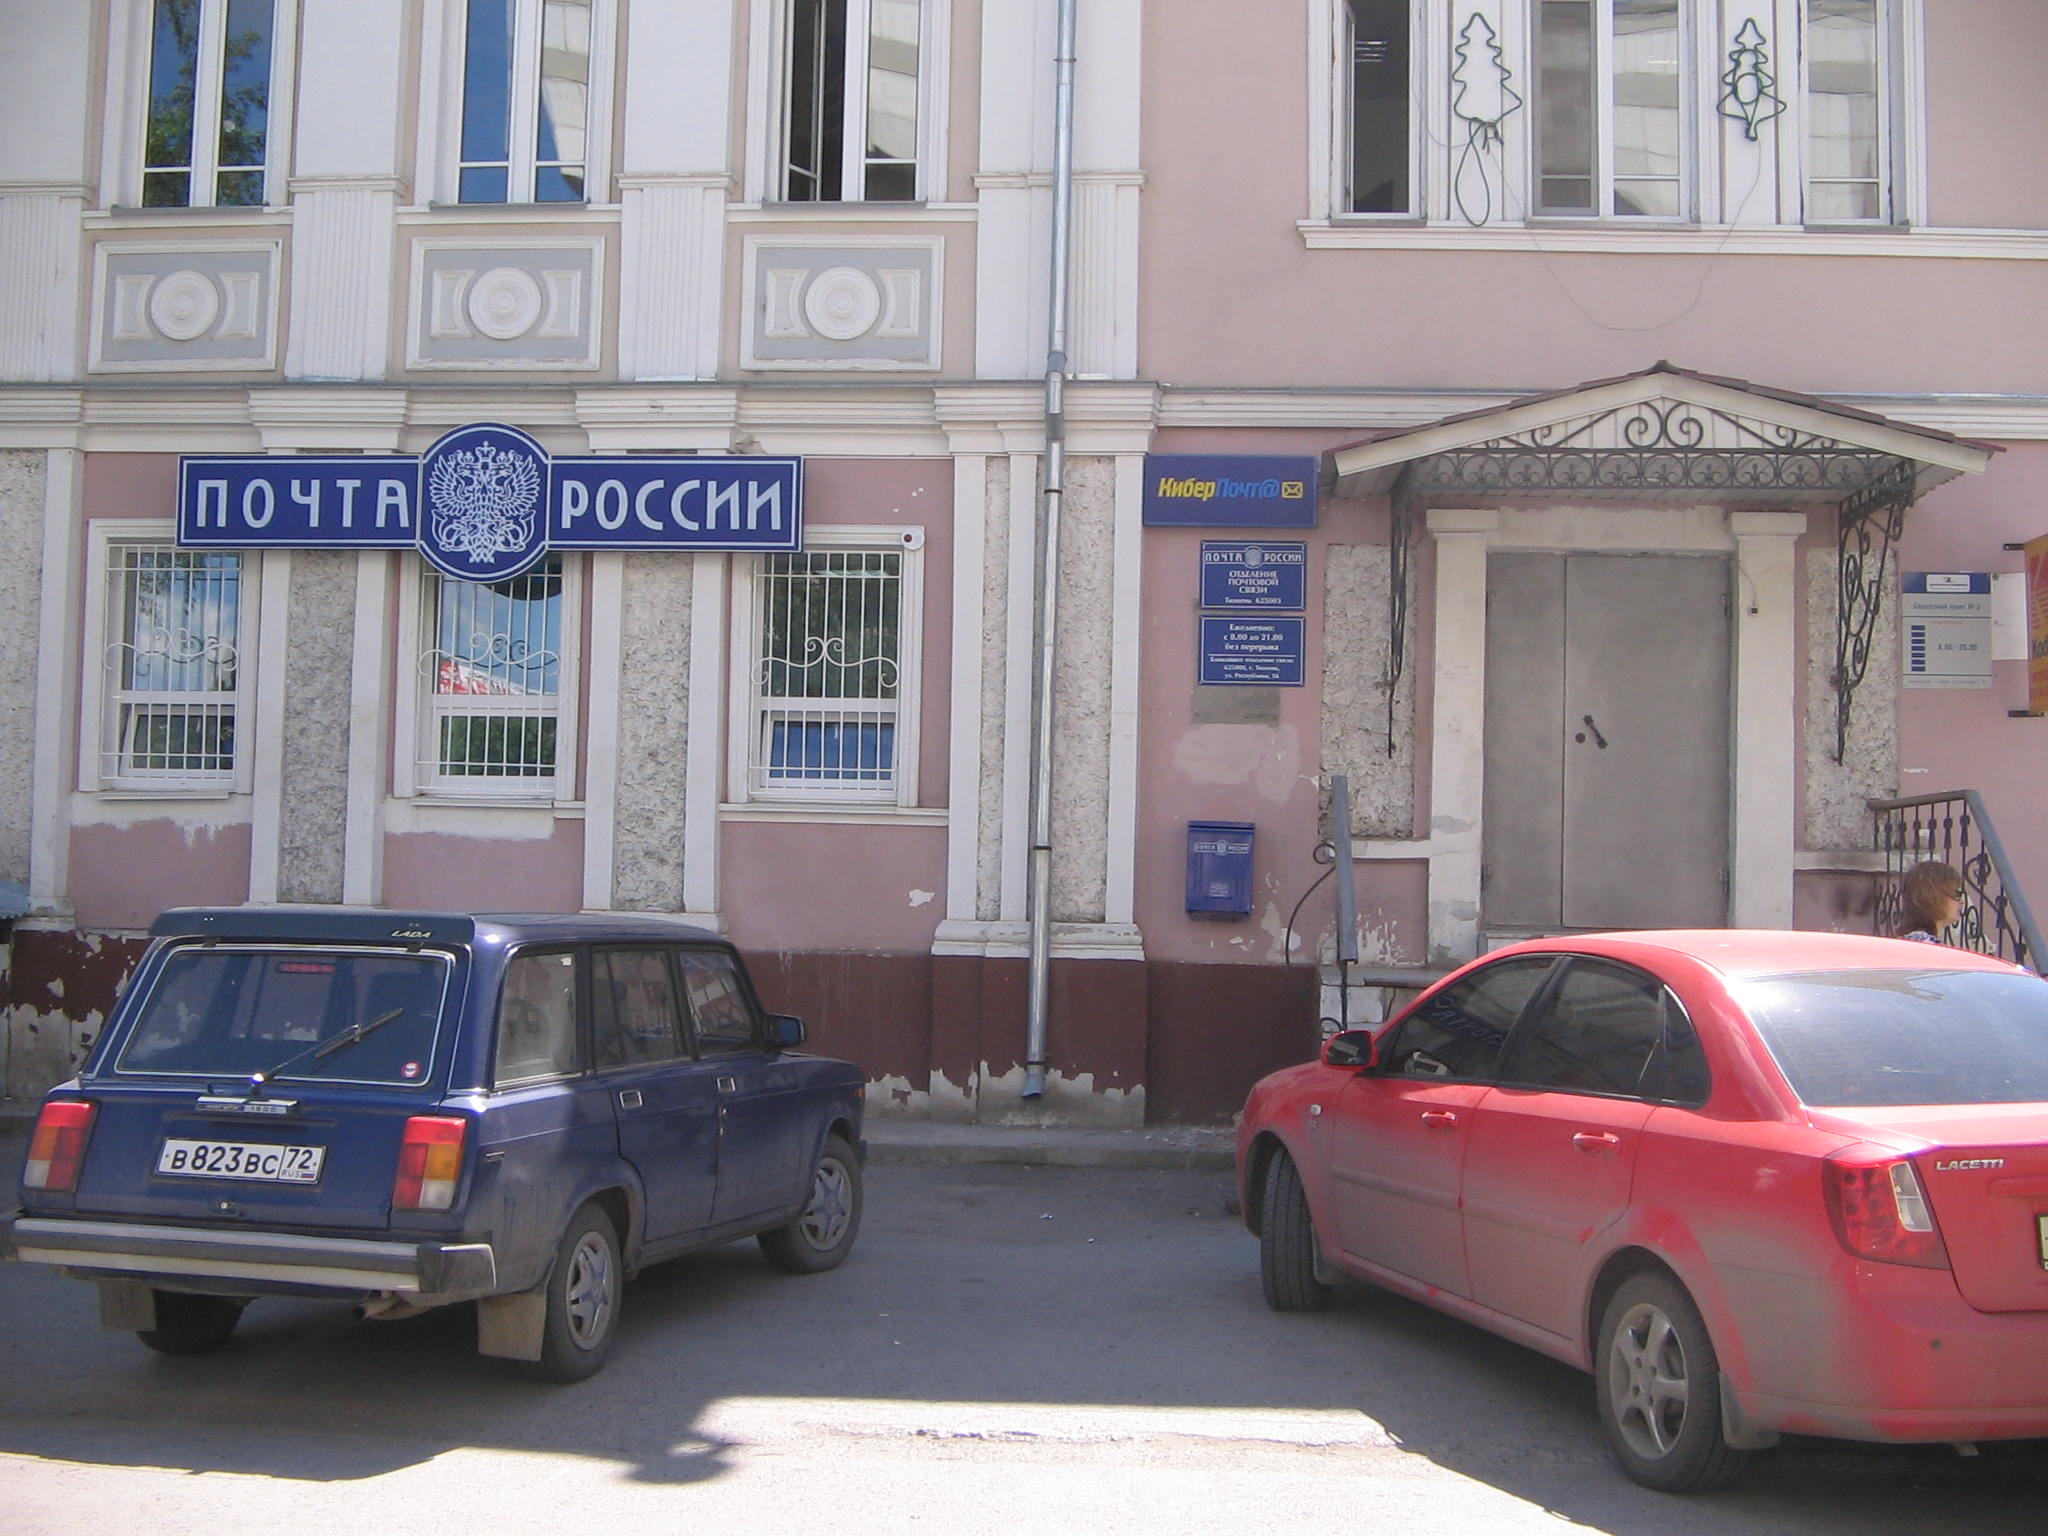 ВХОД, отделение почтовой связи 625019, Тюменская обл., Тюмень